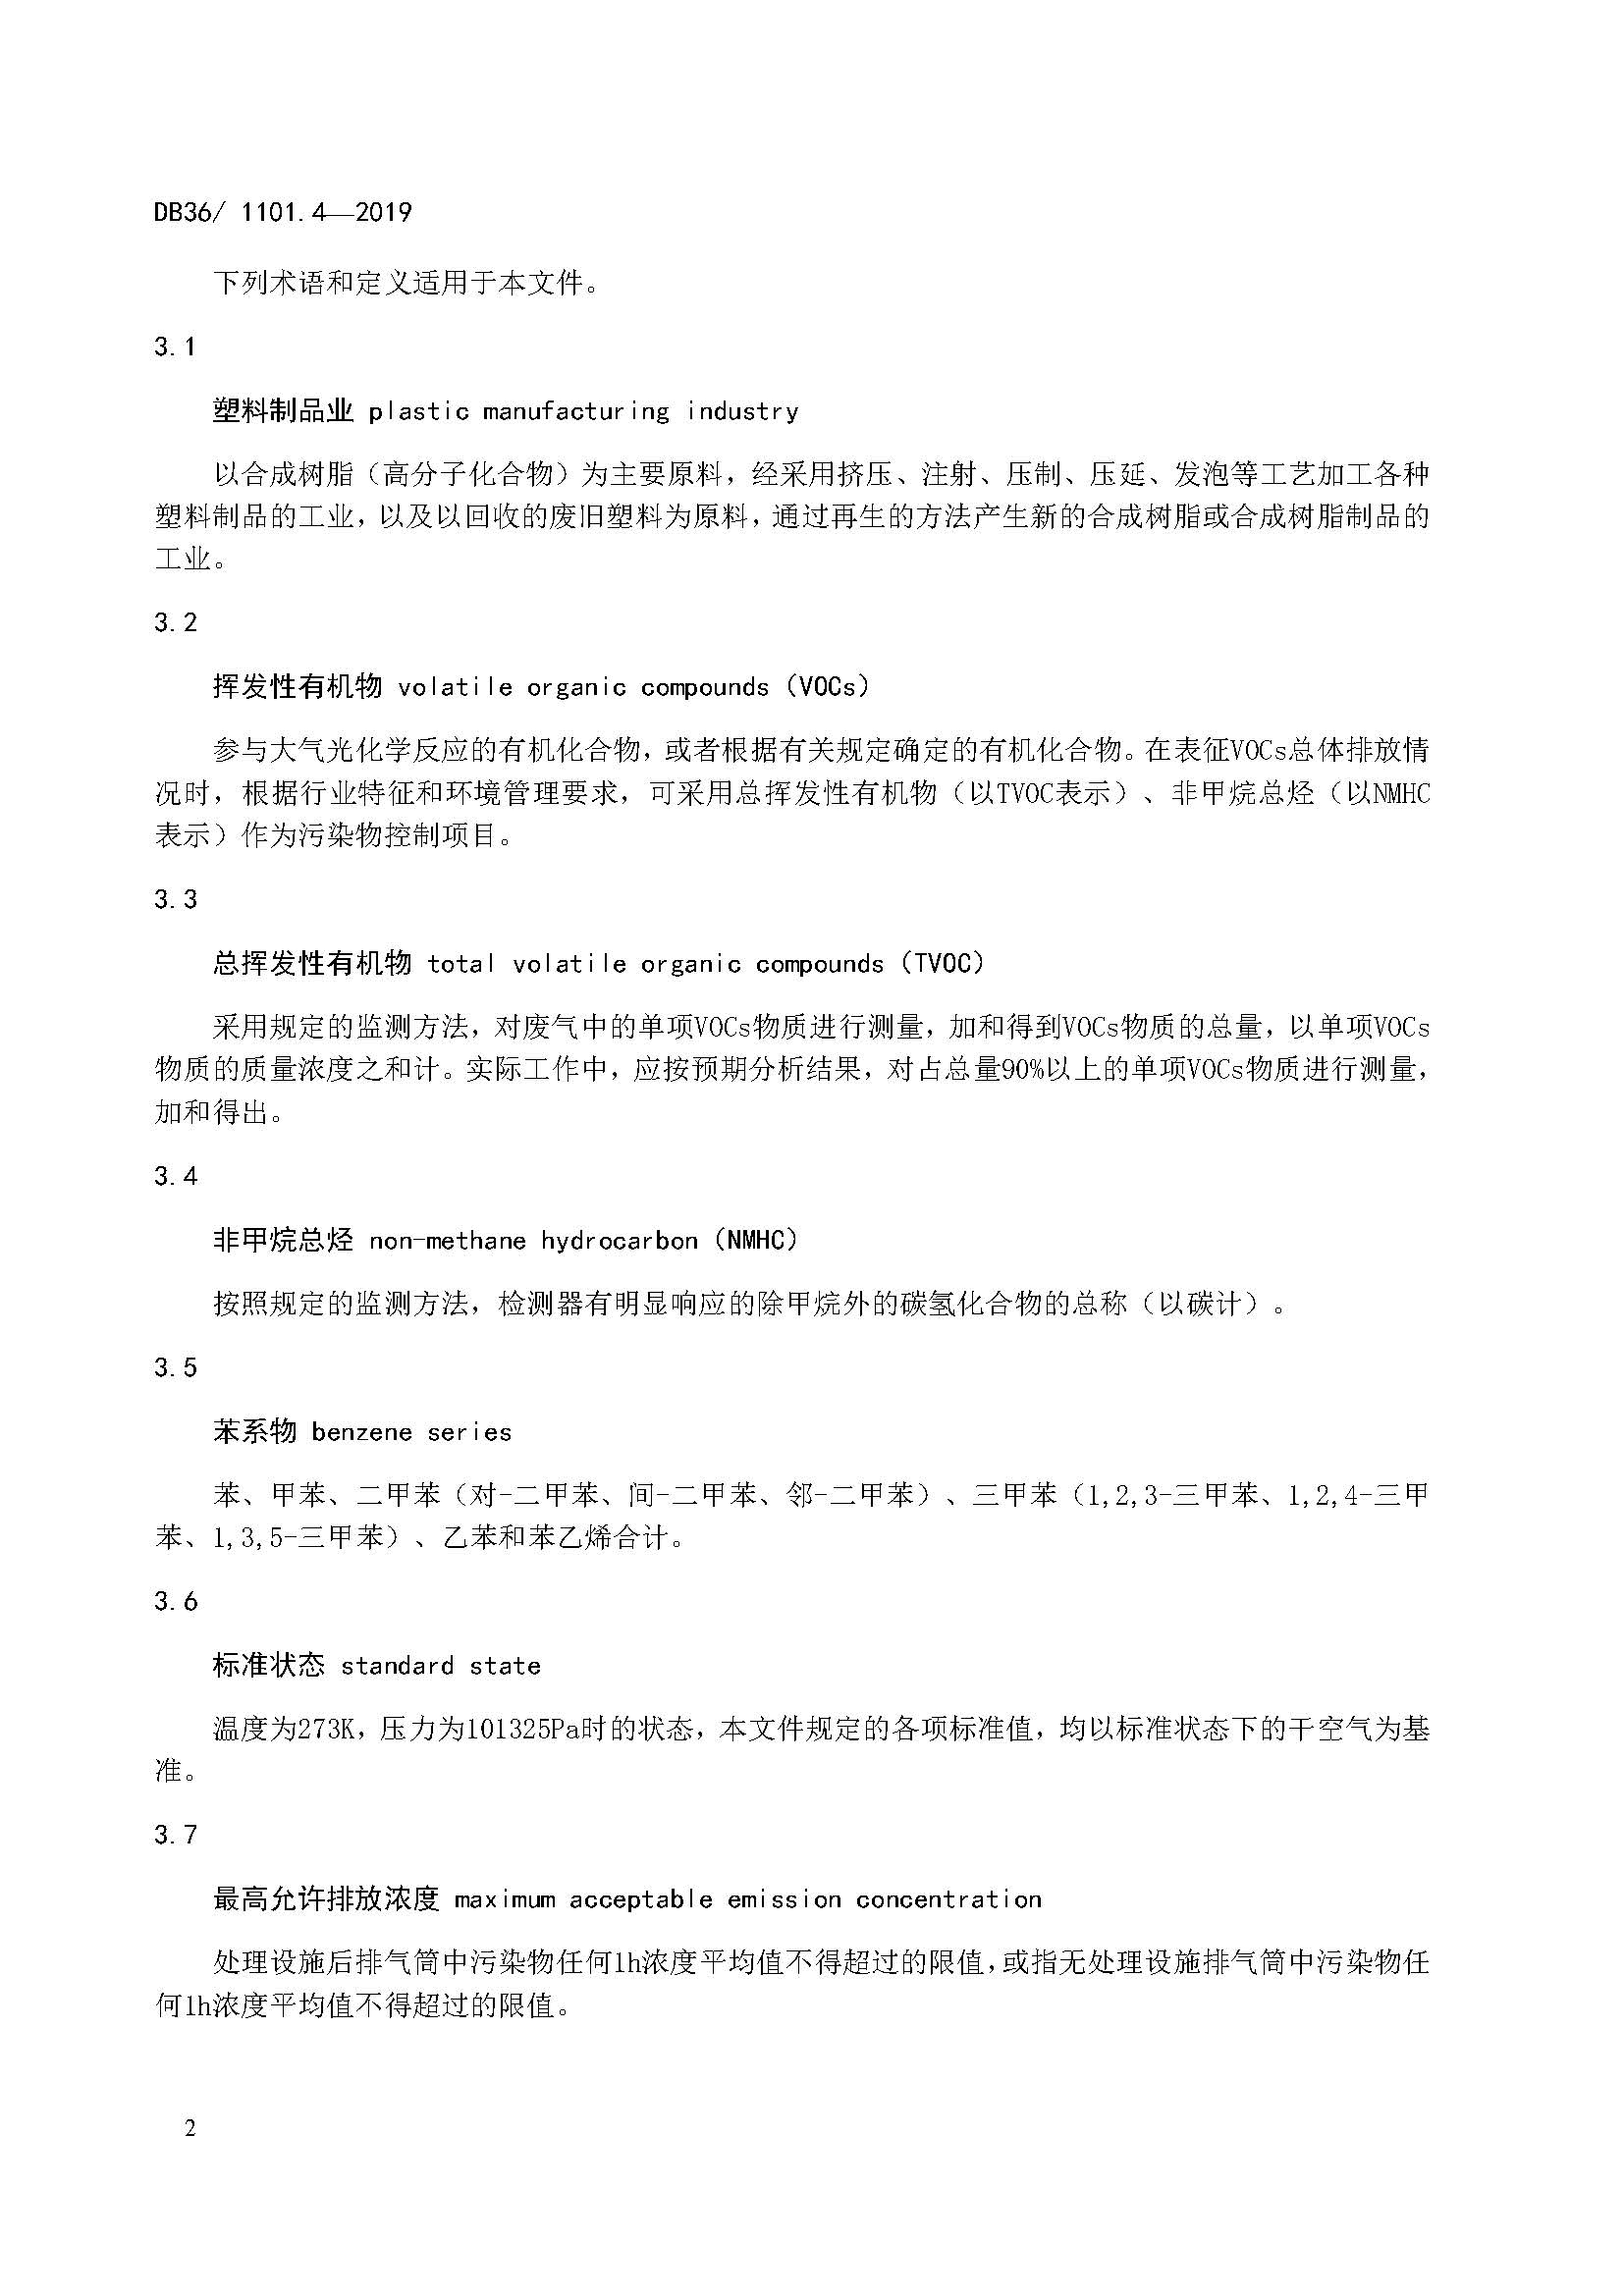 江西省塑料制品业挥发性有机物排放标准_页面_08.jpg